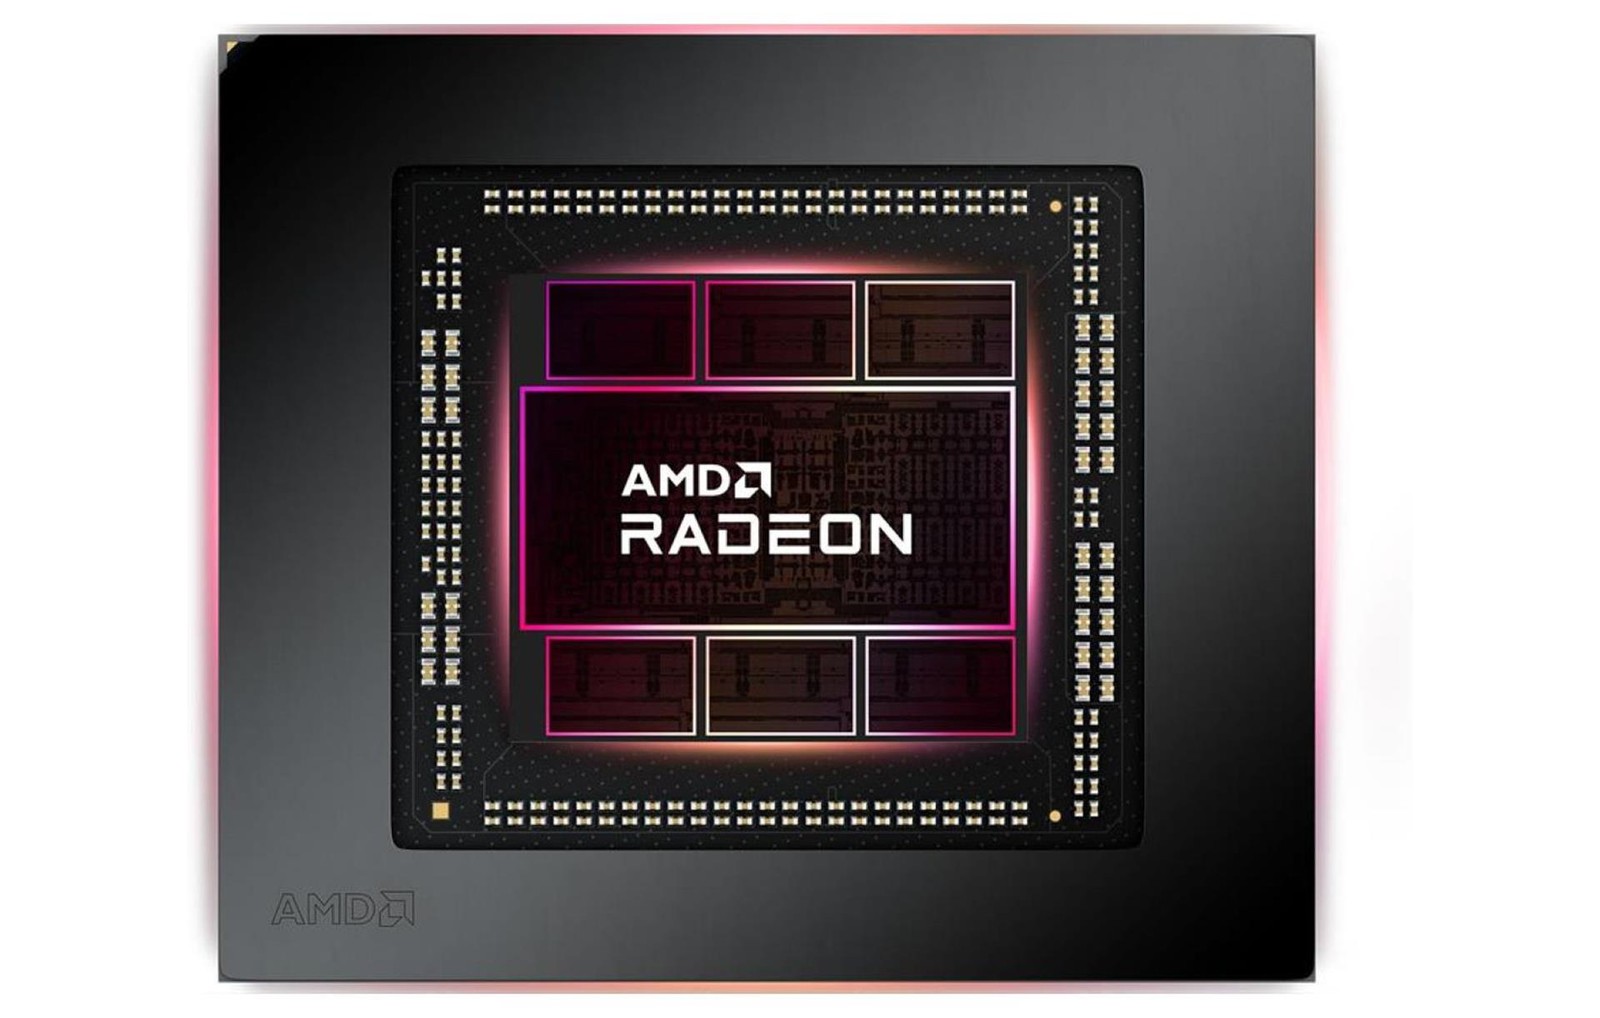 Najnowsze sterowniki AMD psują komputery. Po tej wpadce trudno będzie się pozbierać